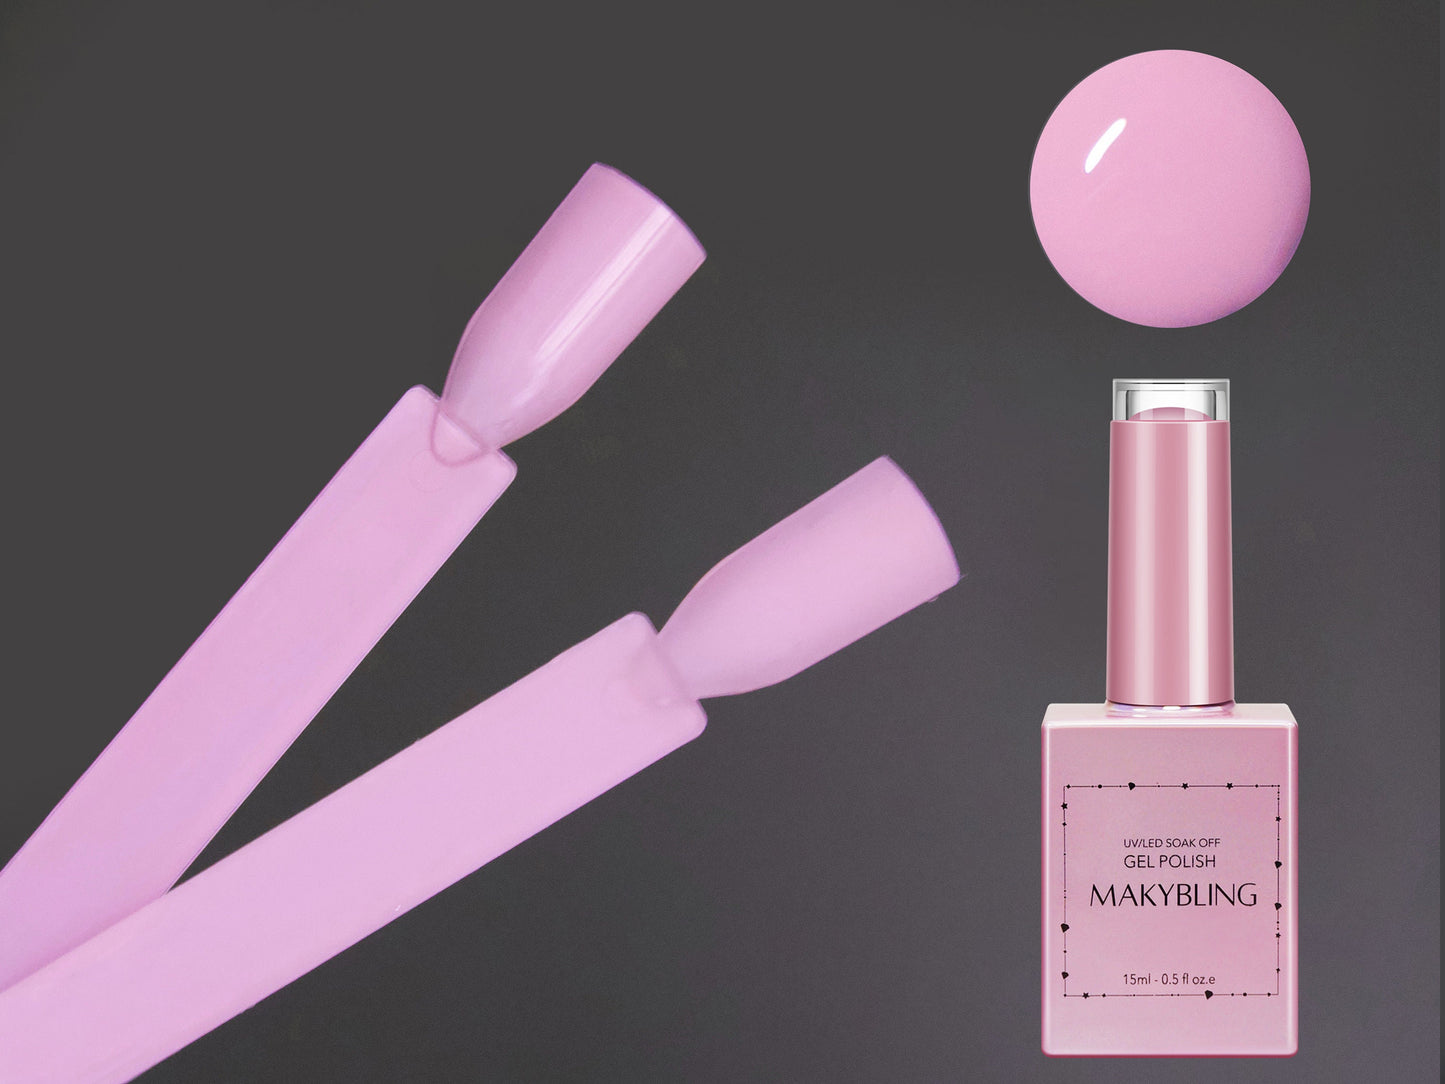 15ml Lavender Blush Gel polish/ Carnation Pink Solid color Nails/ Pastel Baby Pink Soak off UV/Led Gel polish Manicure Pedicure